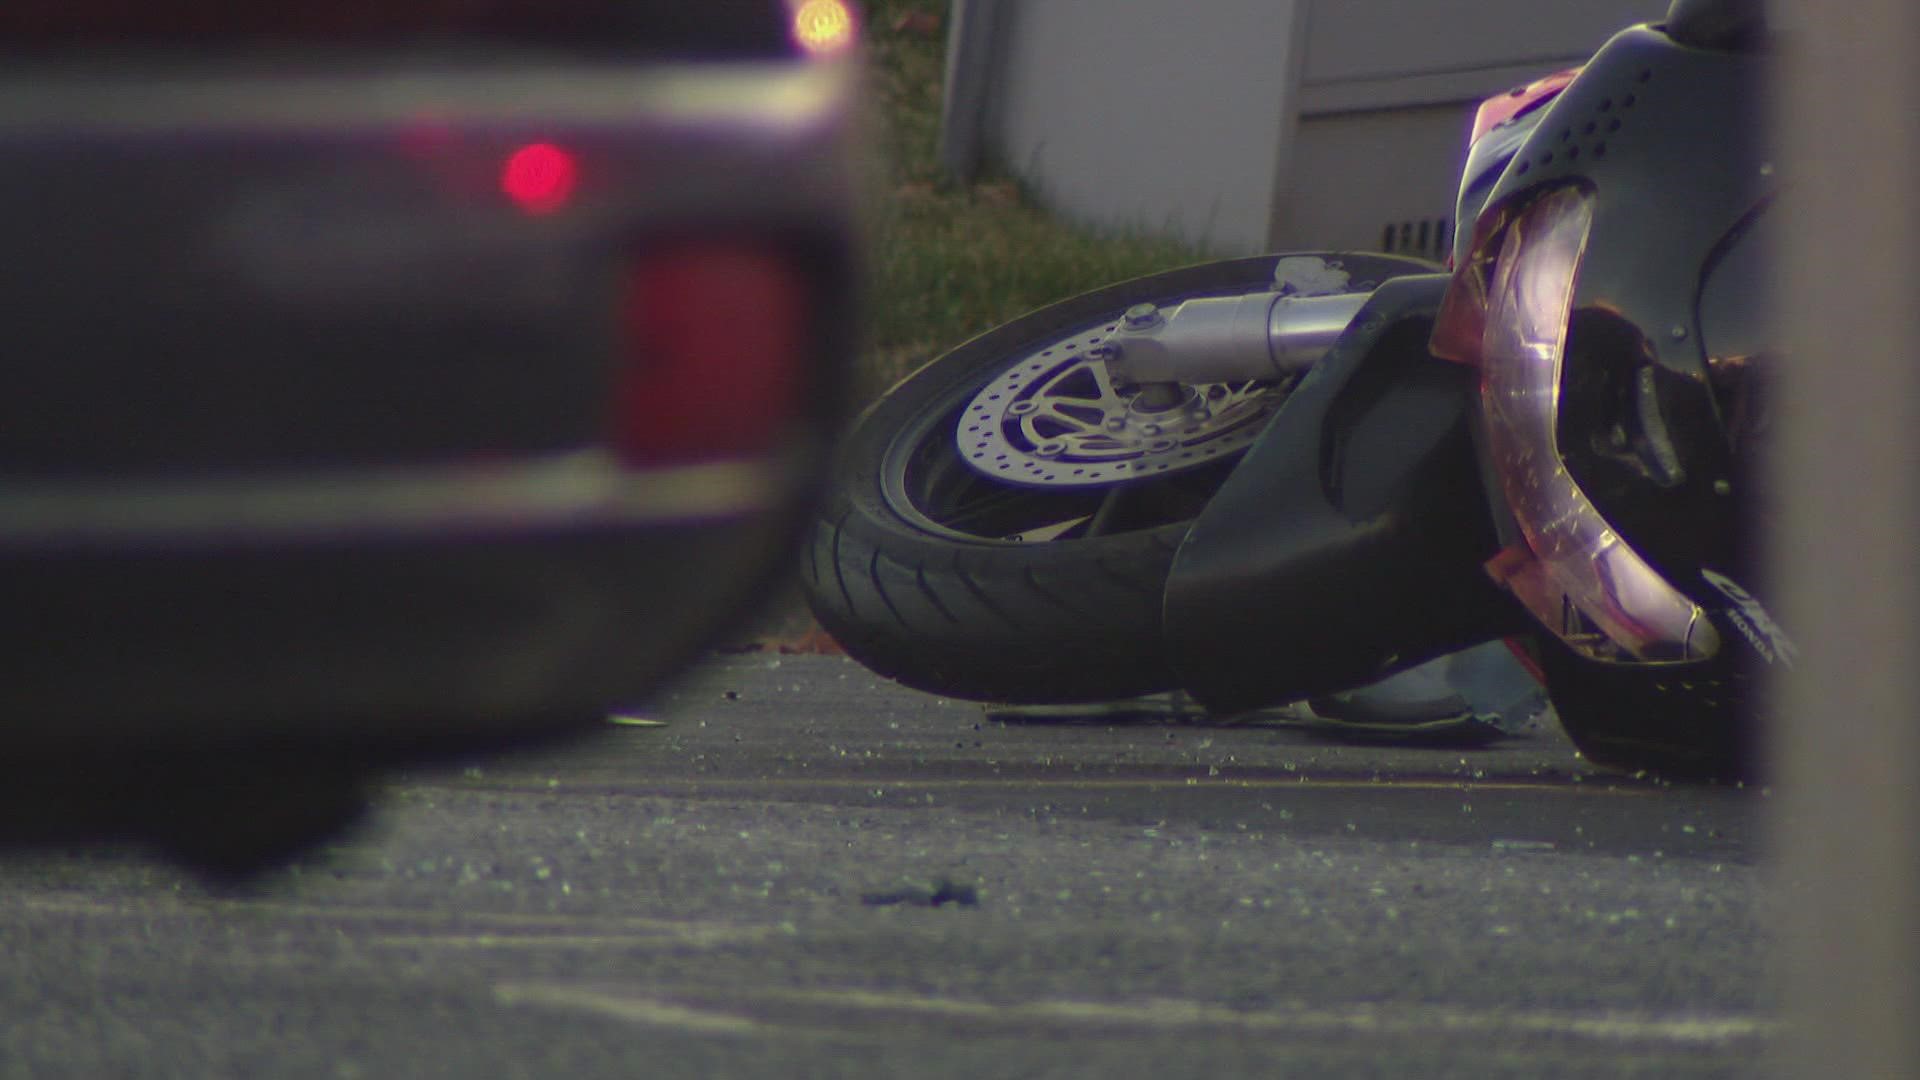 The crash happened around 5 p.m. at Warren Avenue and Peoria Street in Aurora.